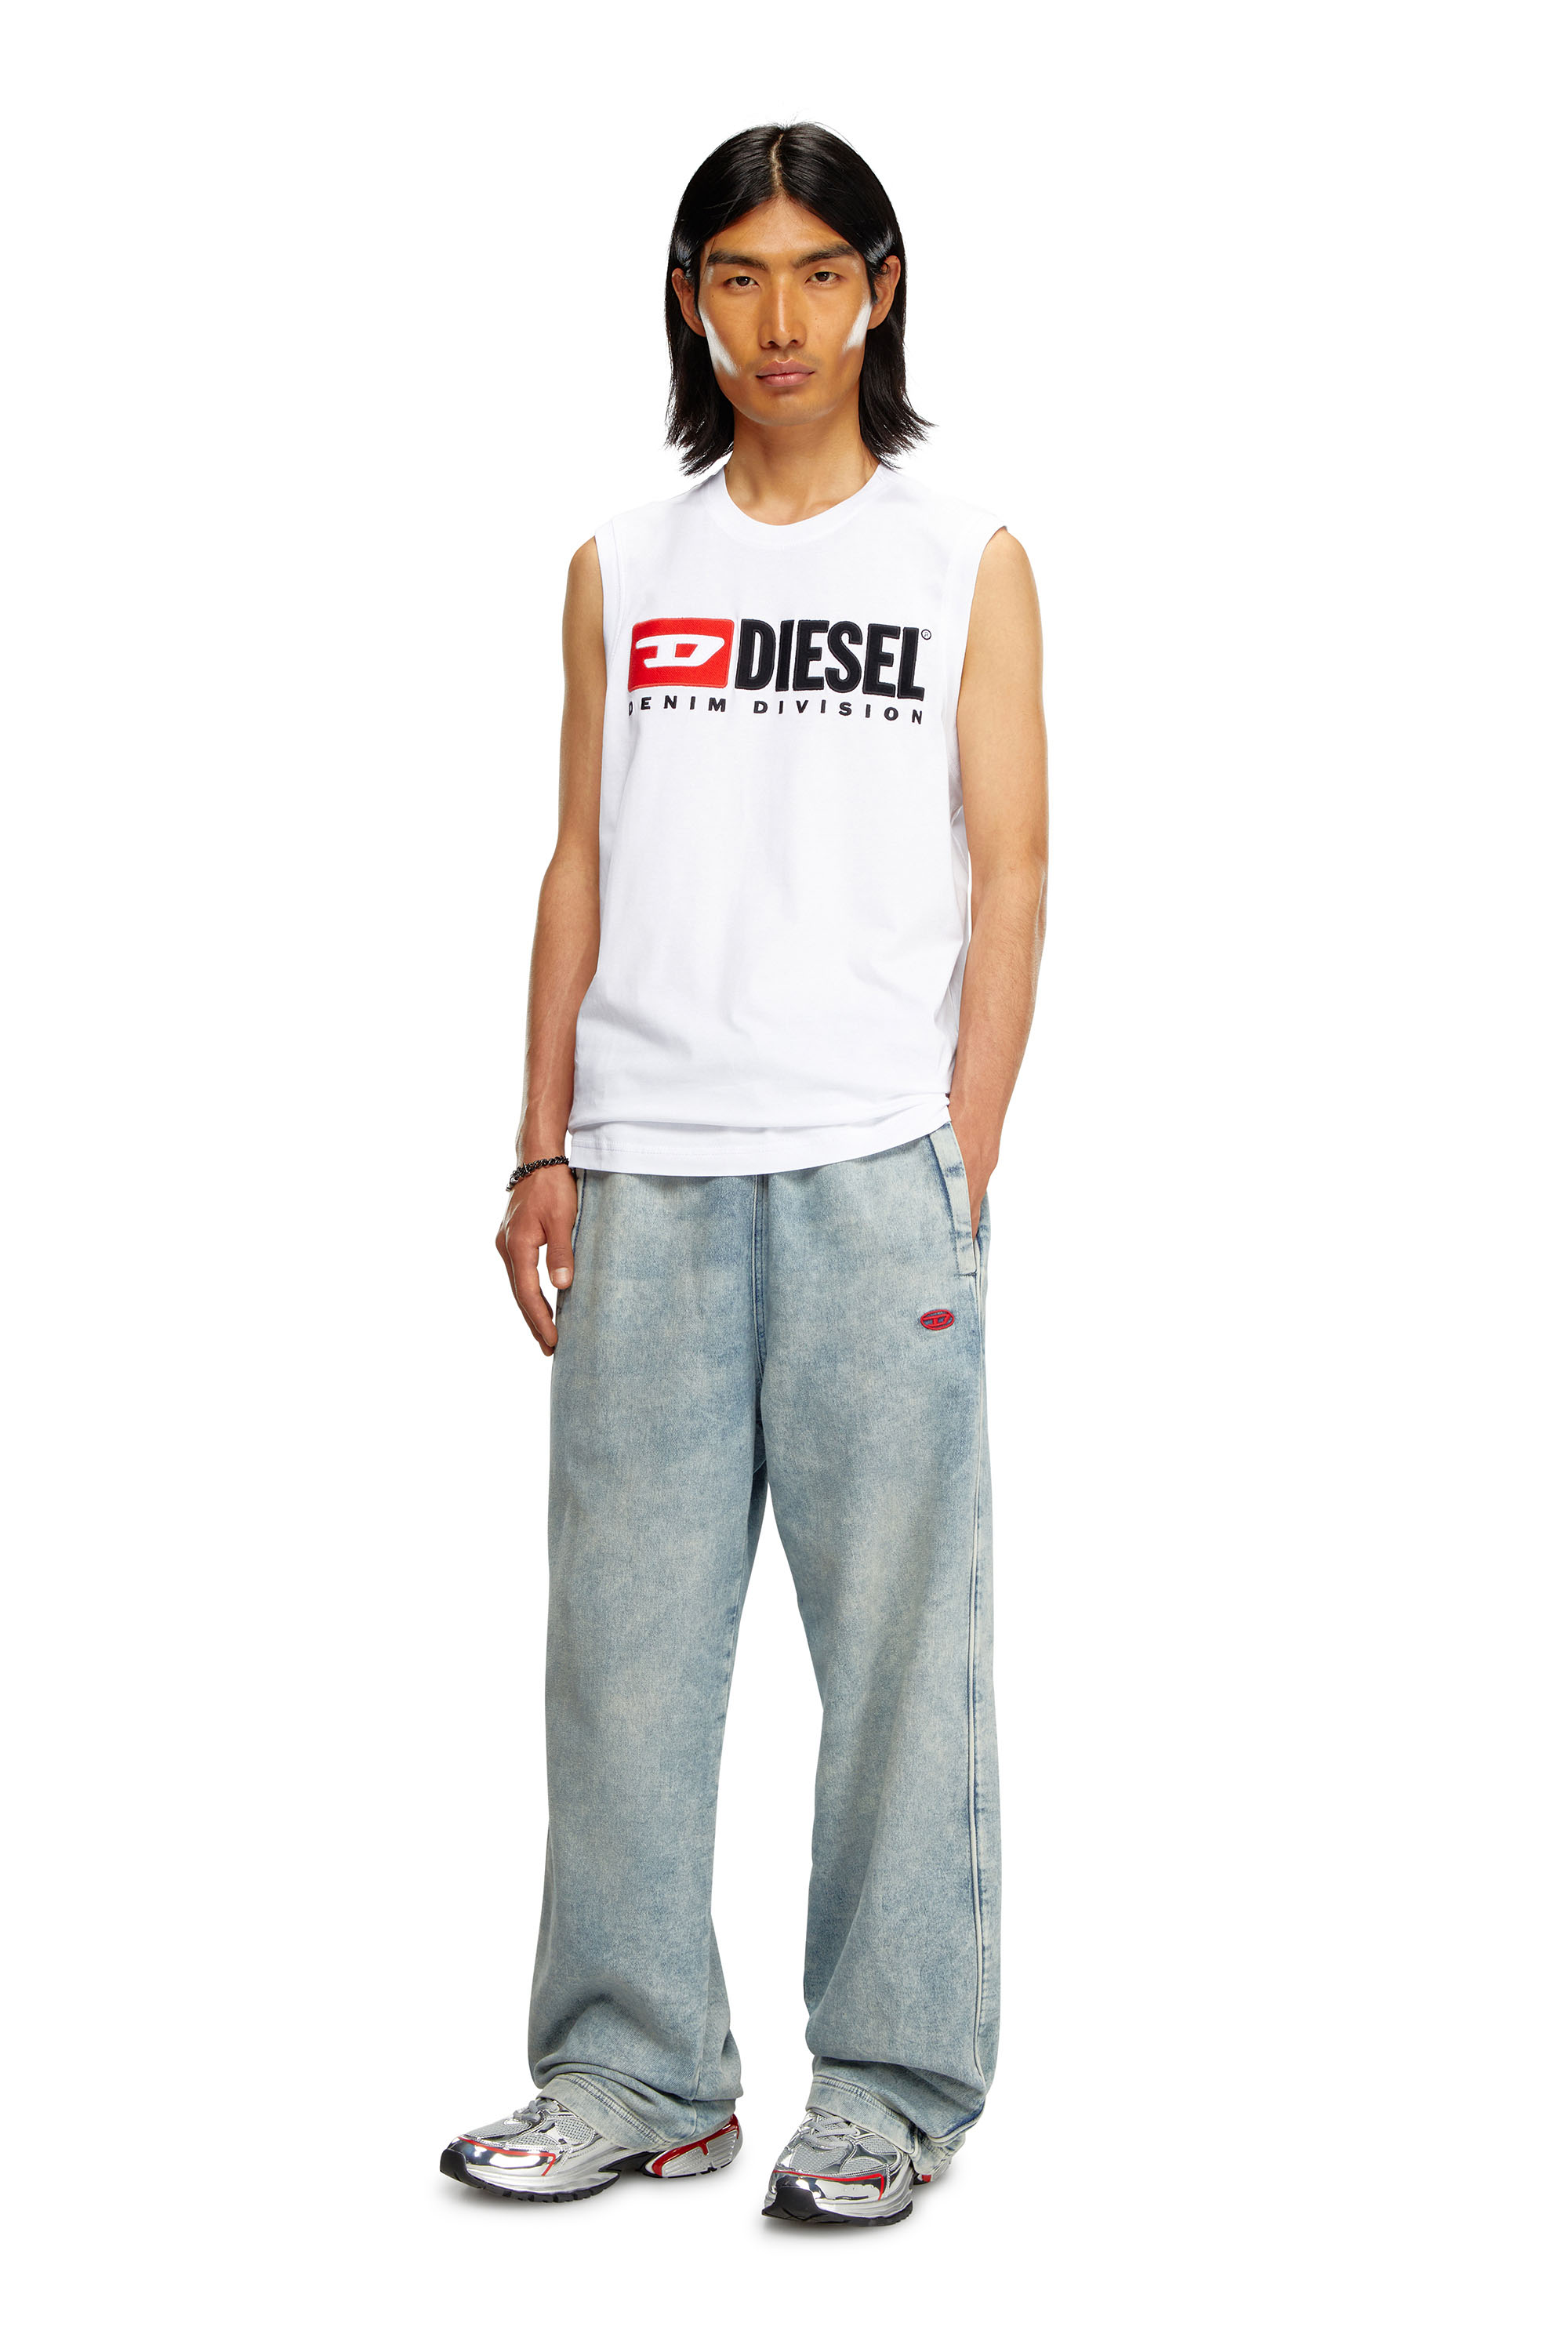 Diesel - T-ISCO-DIV, Hombre Camiseta sin mangas con logotipo estampado en el pecho in Blanco - Image 3